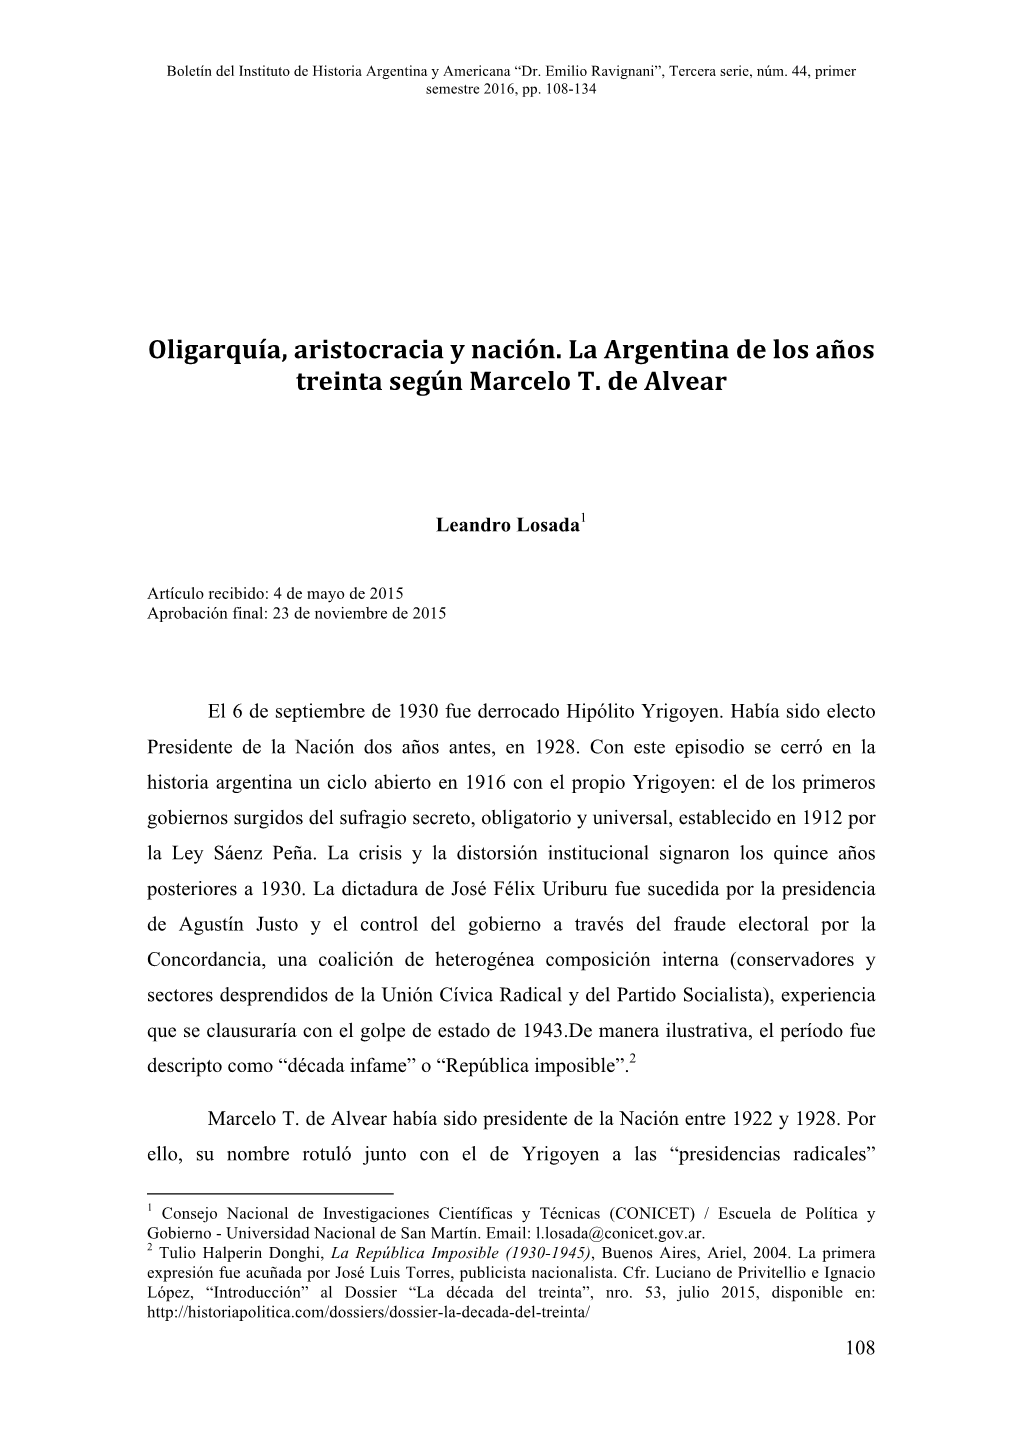 Oligarquía, Aristocracia Y Nación. La Argentina De Los Años Treinta Según Marcelo T